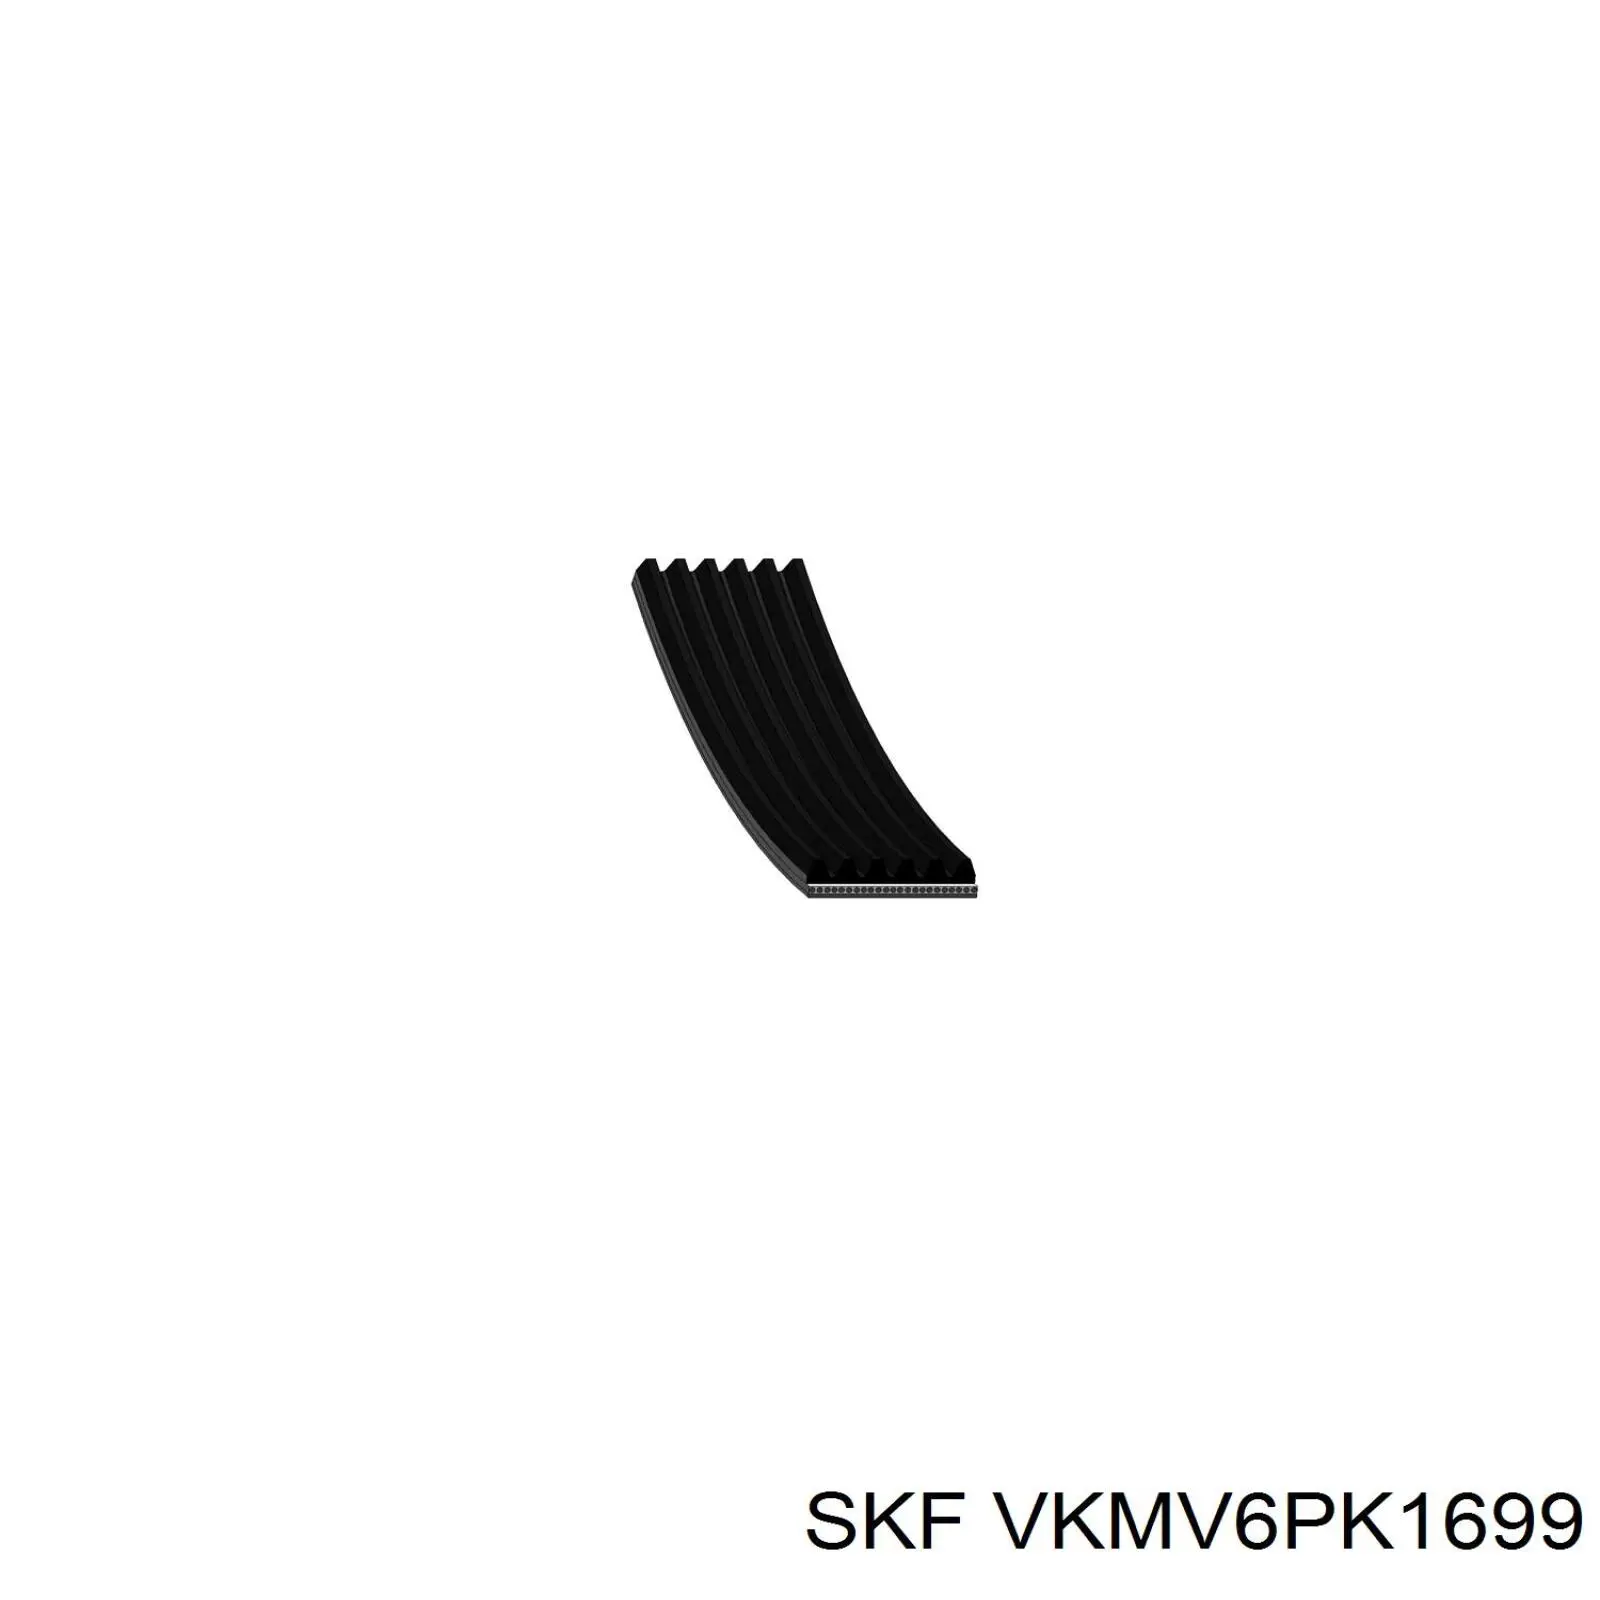 VKMV6PK1699 SKF correa trapezoidal